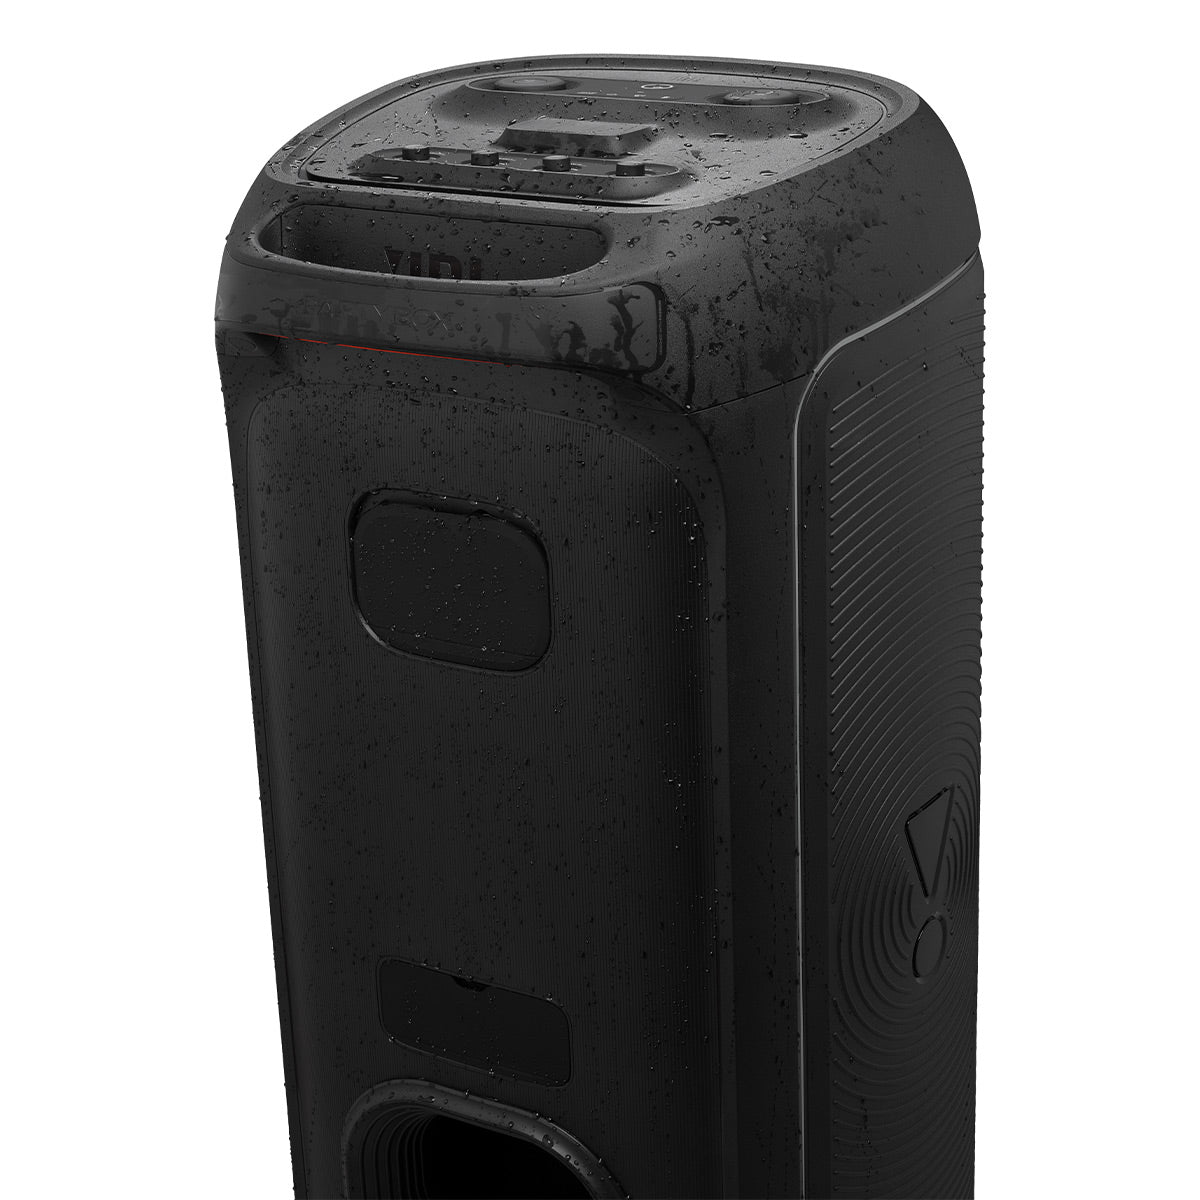 JBL Partybox 1000 Professional 1100W Portable Bluetooth Karaoke Speaker